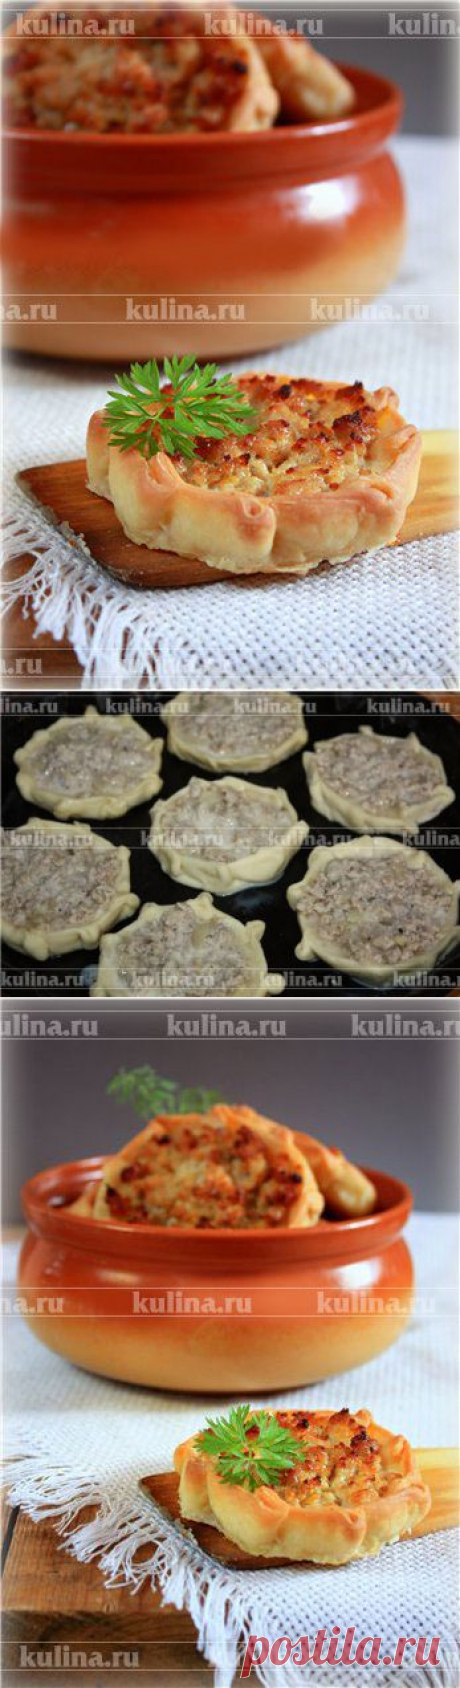 Перепечи с мясом – рецепт приготовления с фото от Kulina.Ru